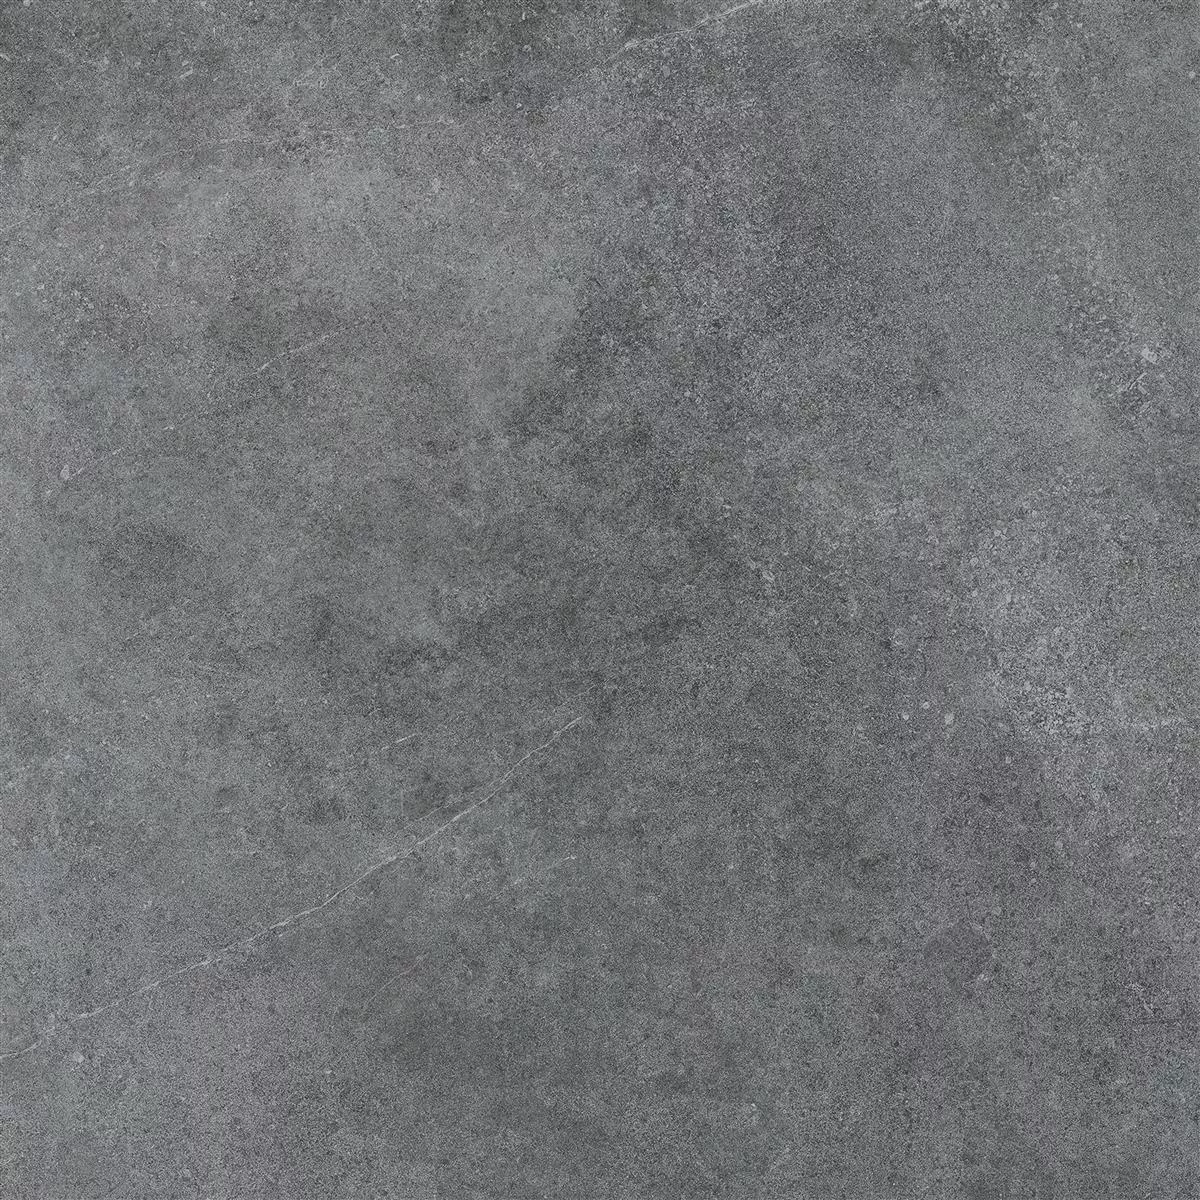 Vzorek Podlahové Dlaždice Montana Neglazovaný Antracitová 60x60cm / R10B